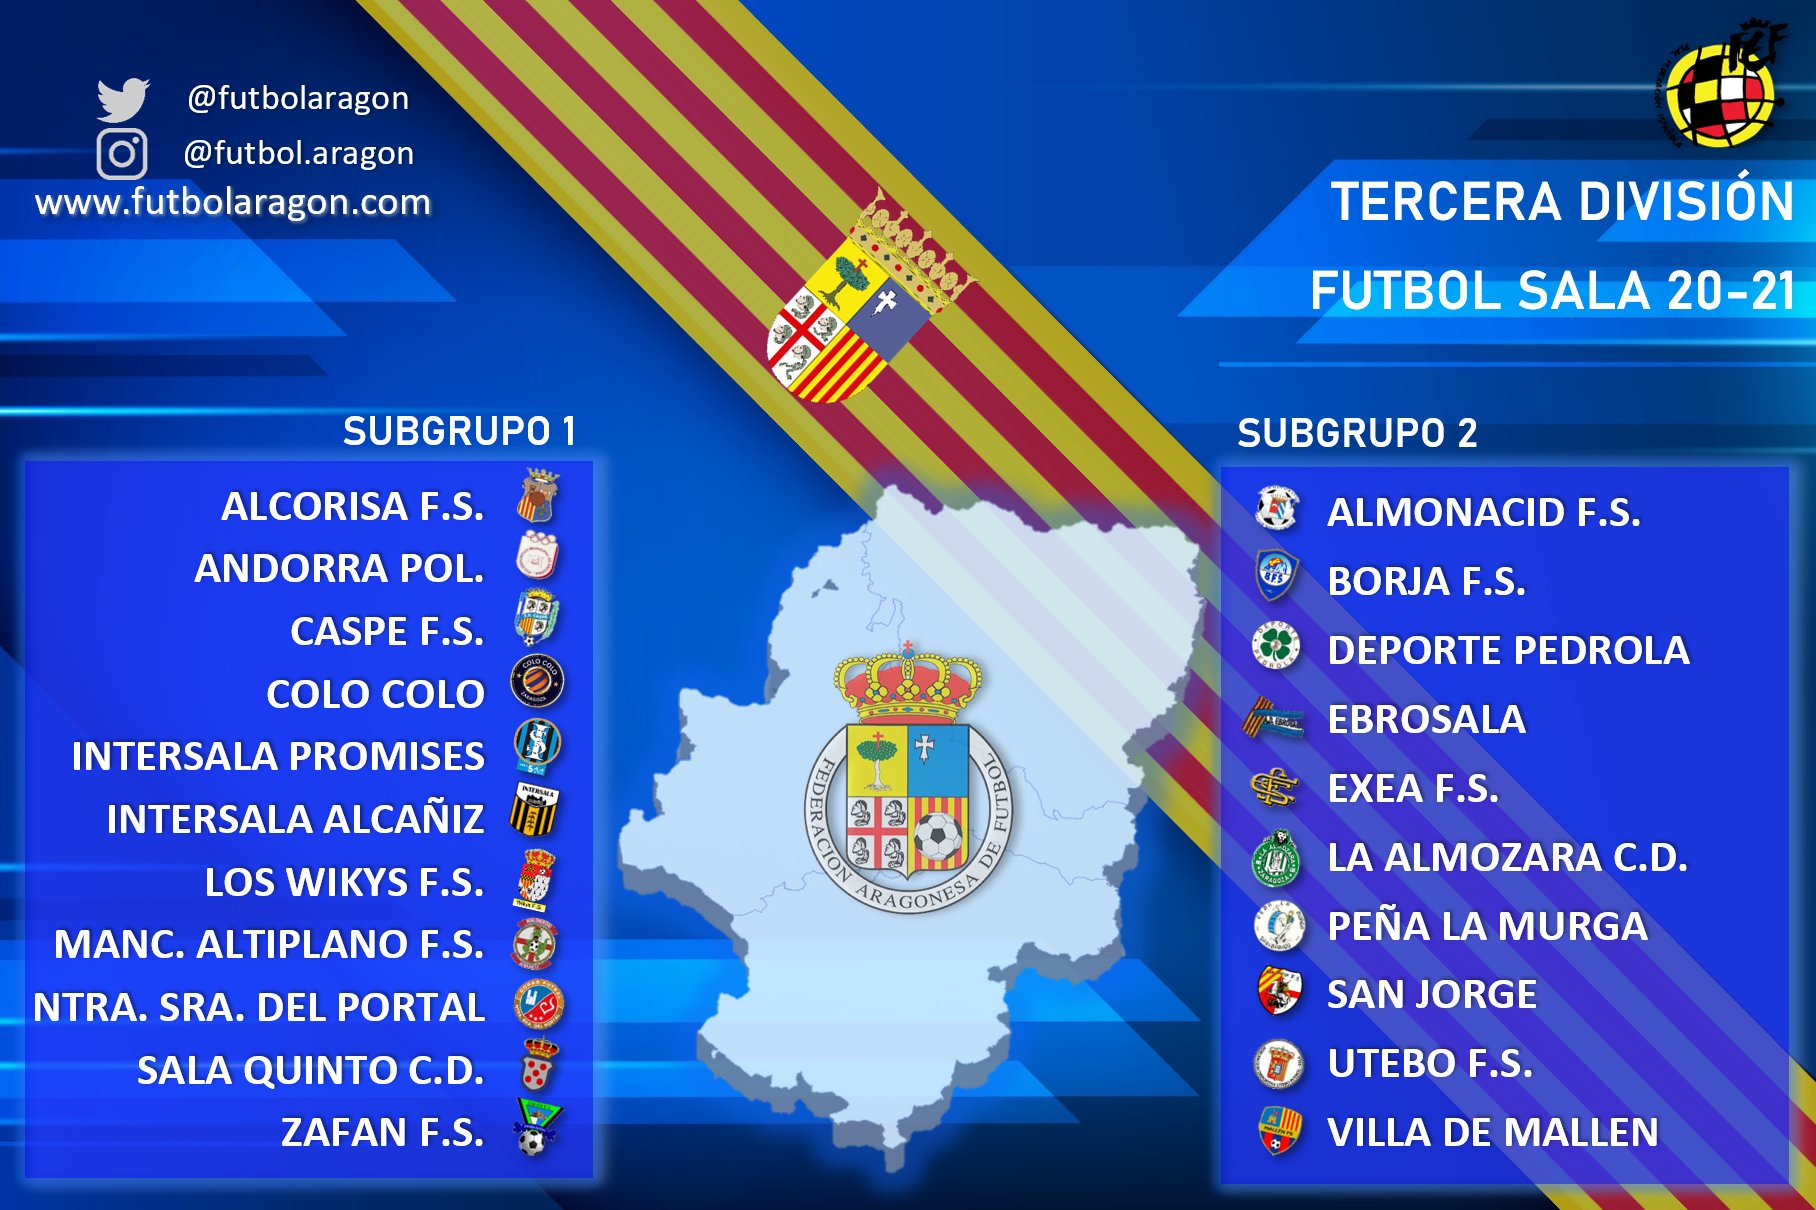 Federación de Fútbol-Resultado de subgrupos Tercera División fútbol sala grupo